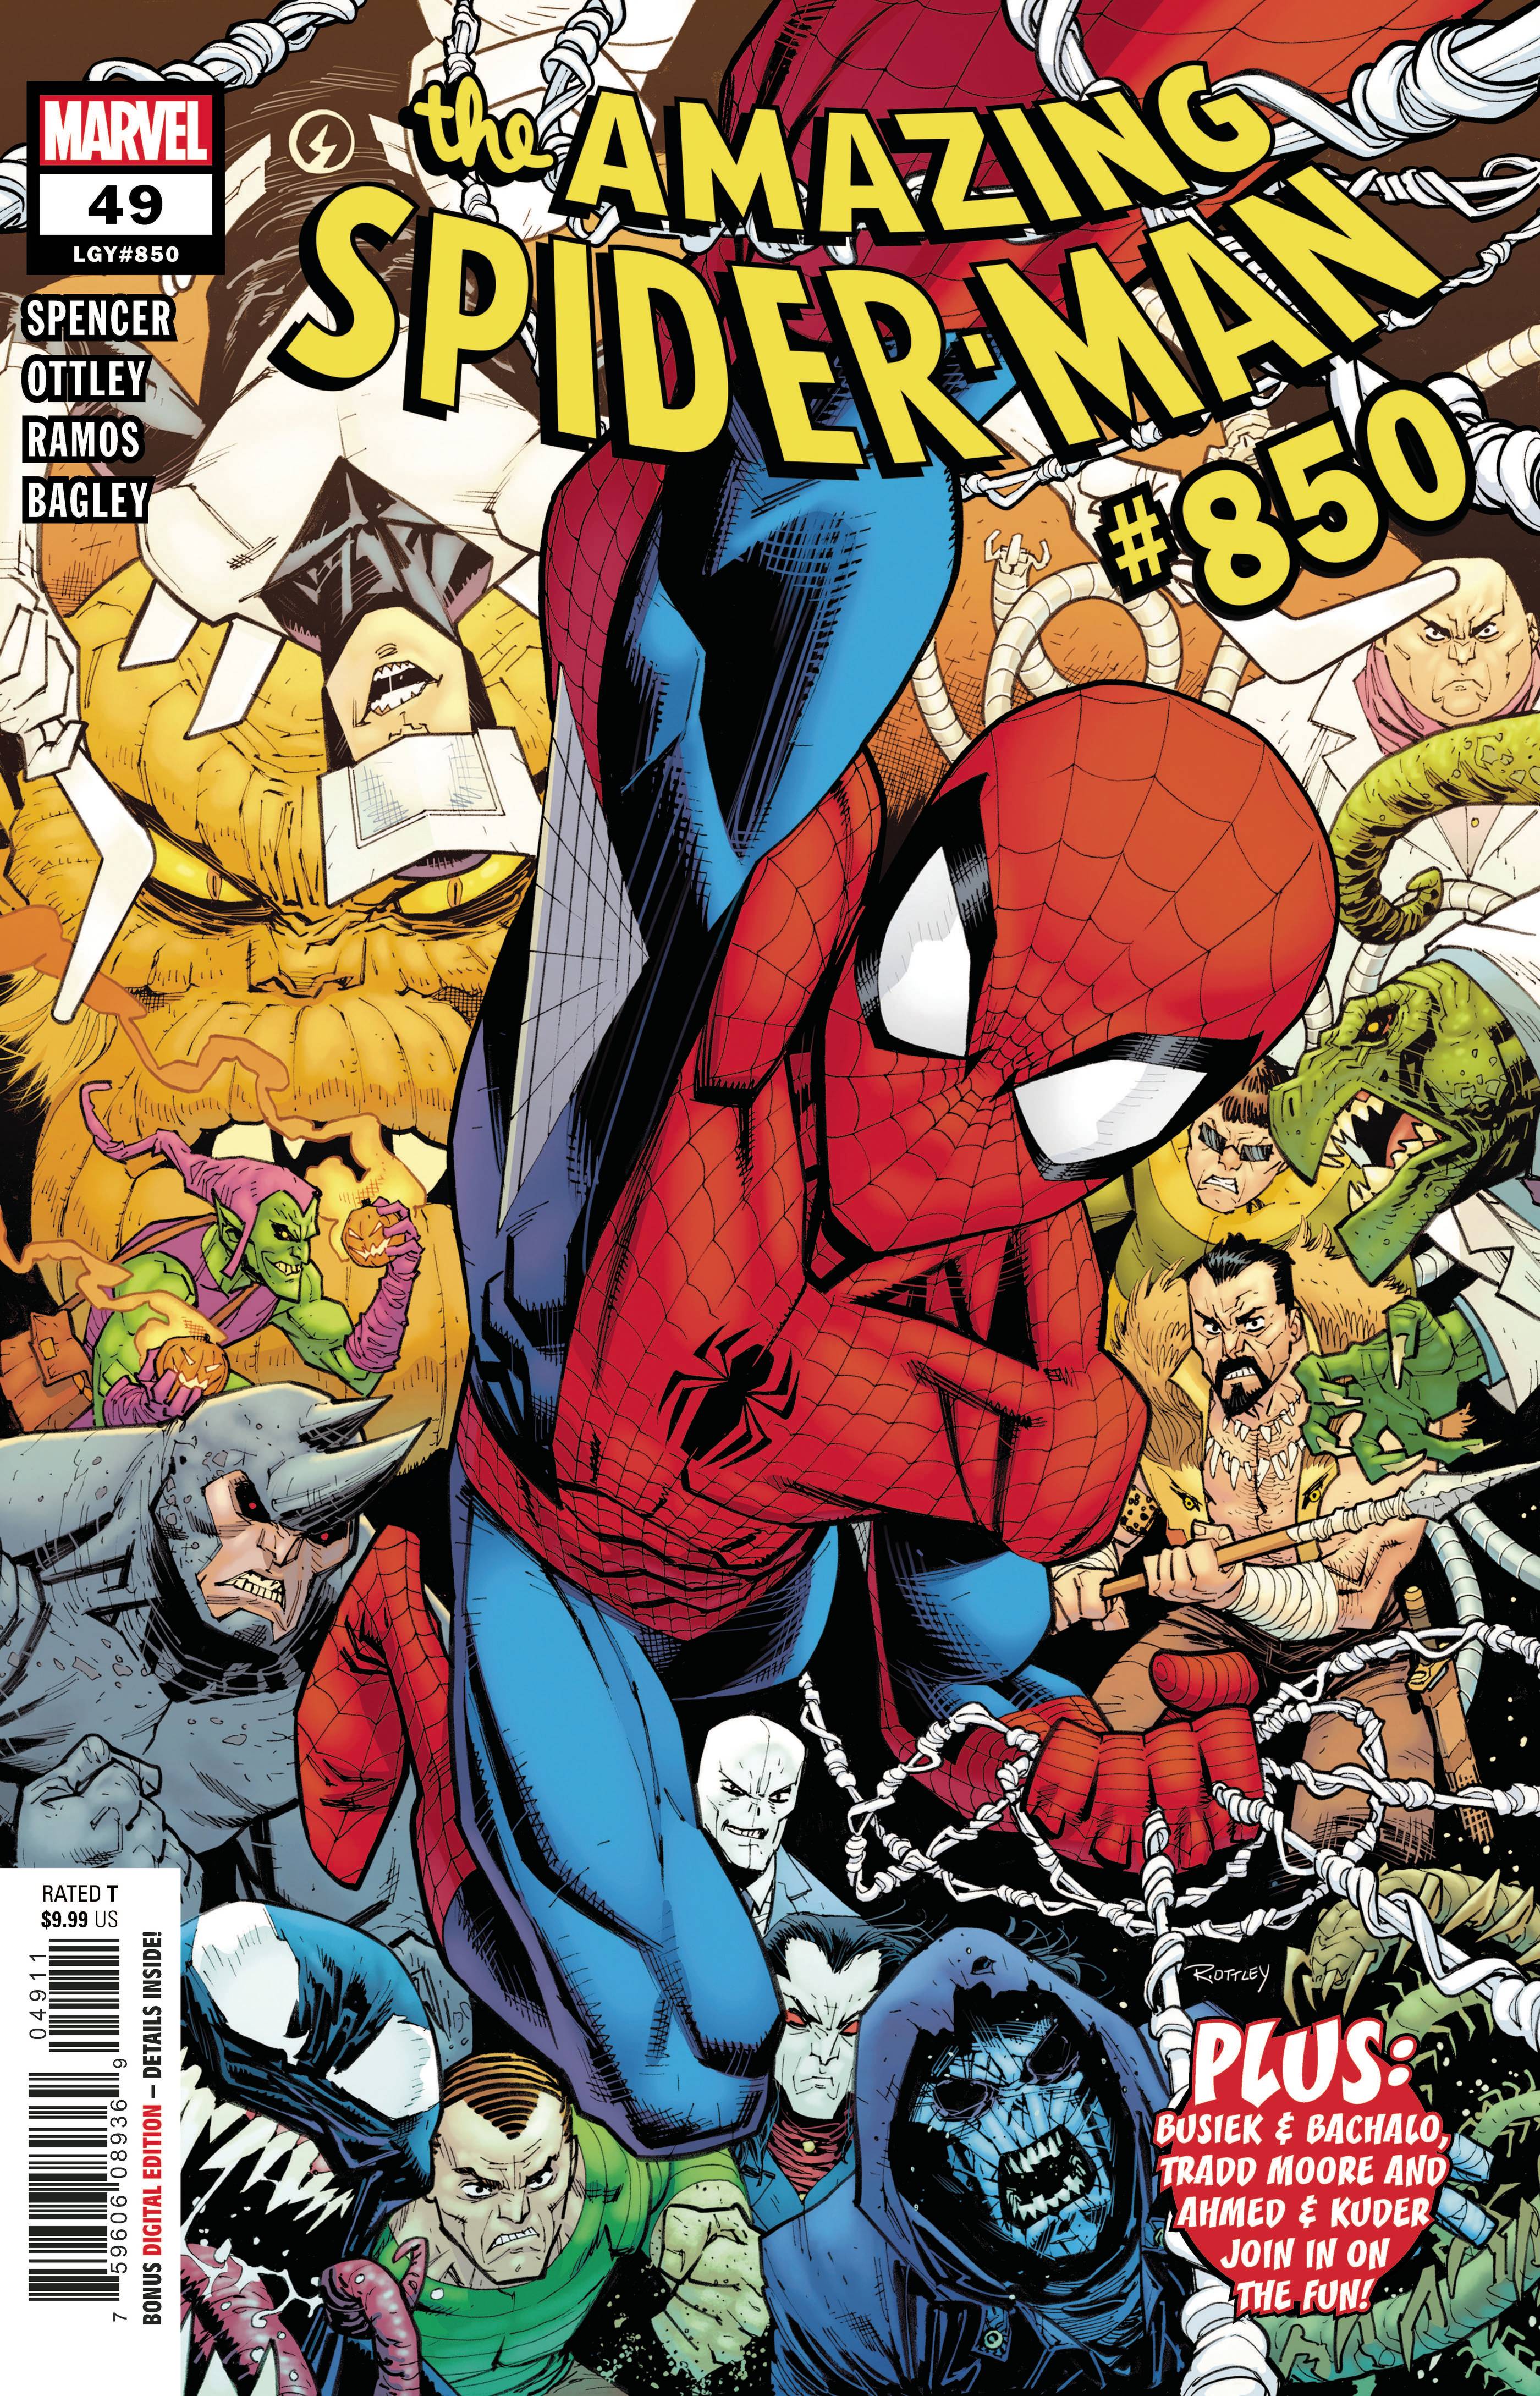 AMAZING SPIDER-MAN #49 | L.A. Mood Comics and Games